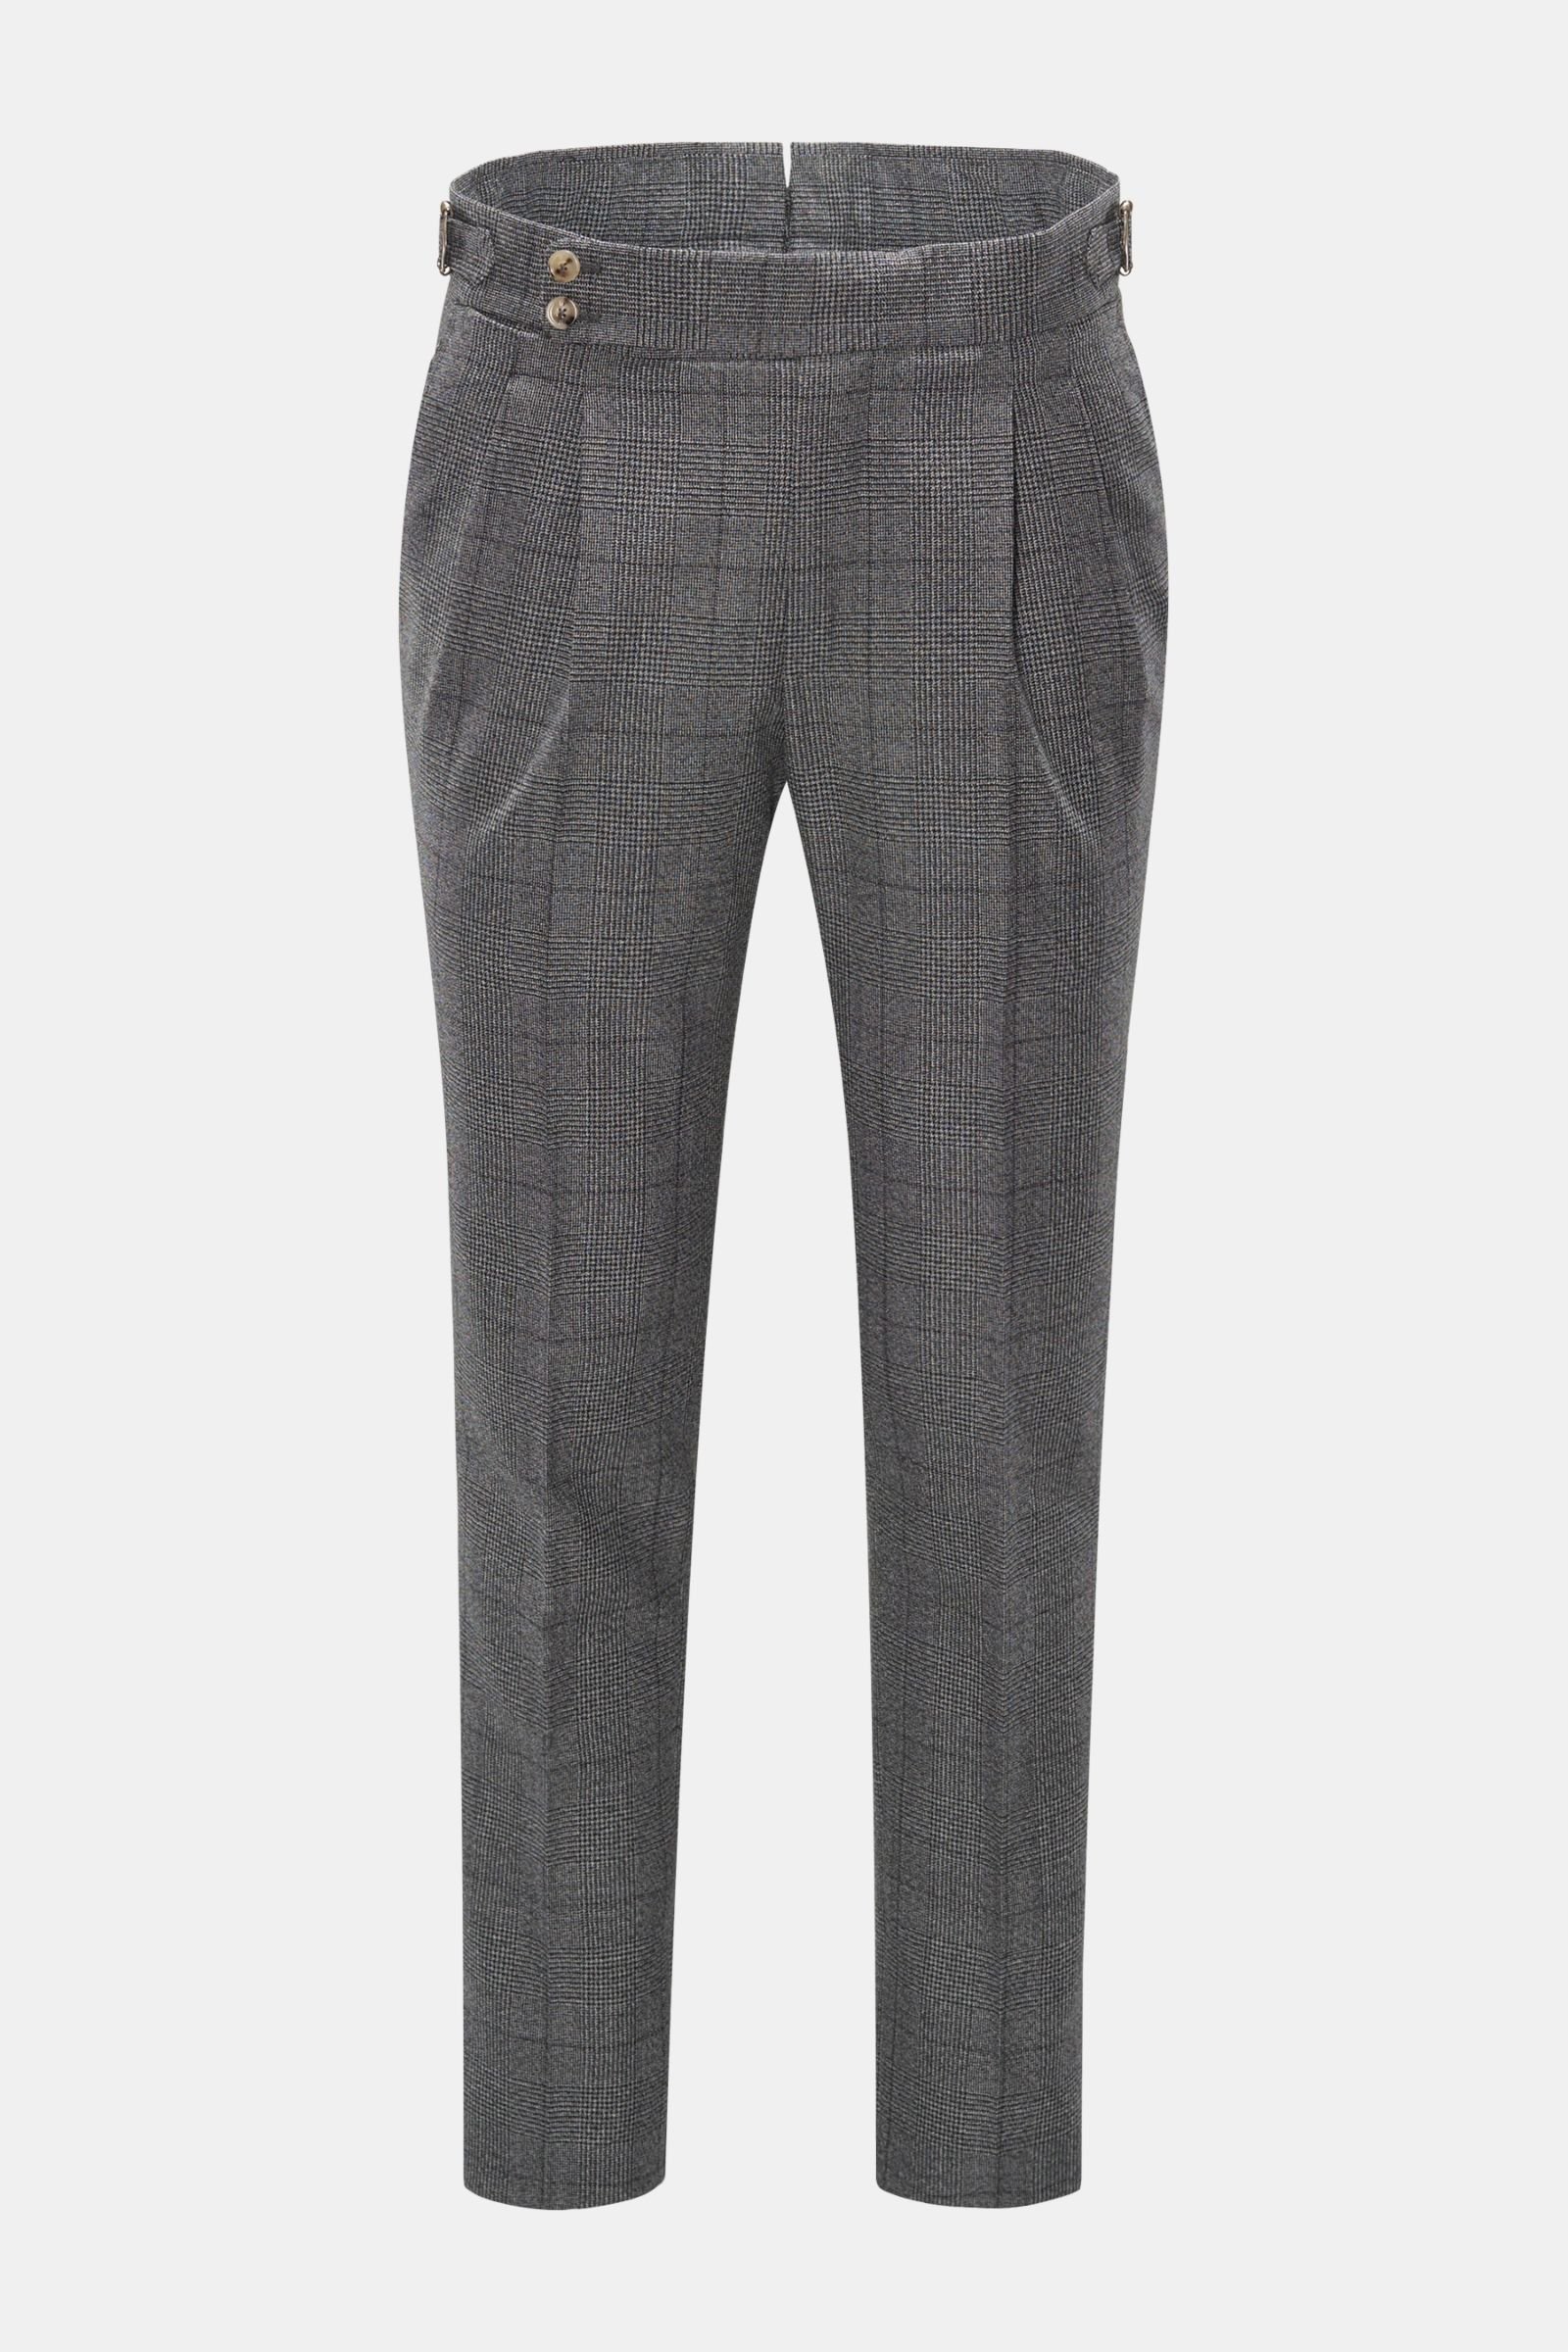 Wool trousers 'Gentleman Fit' dark grey checked